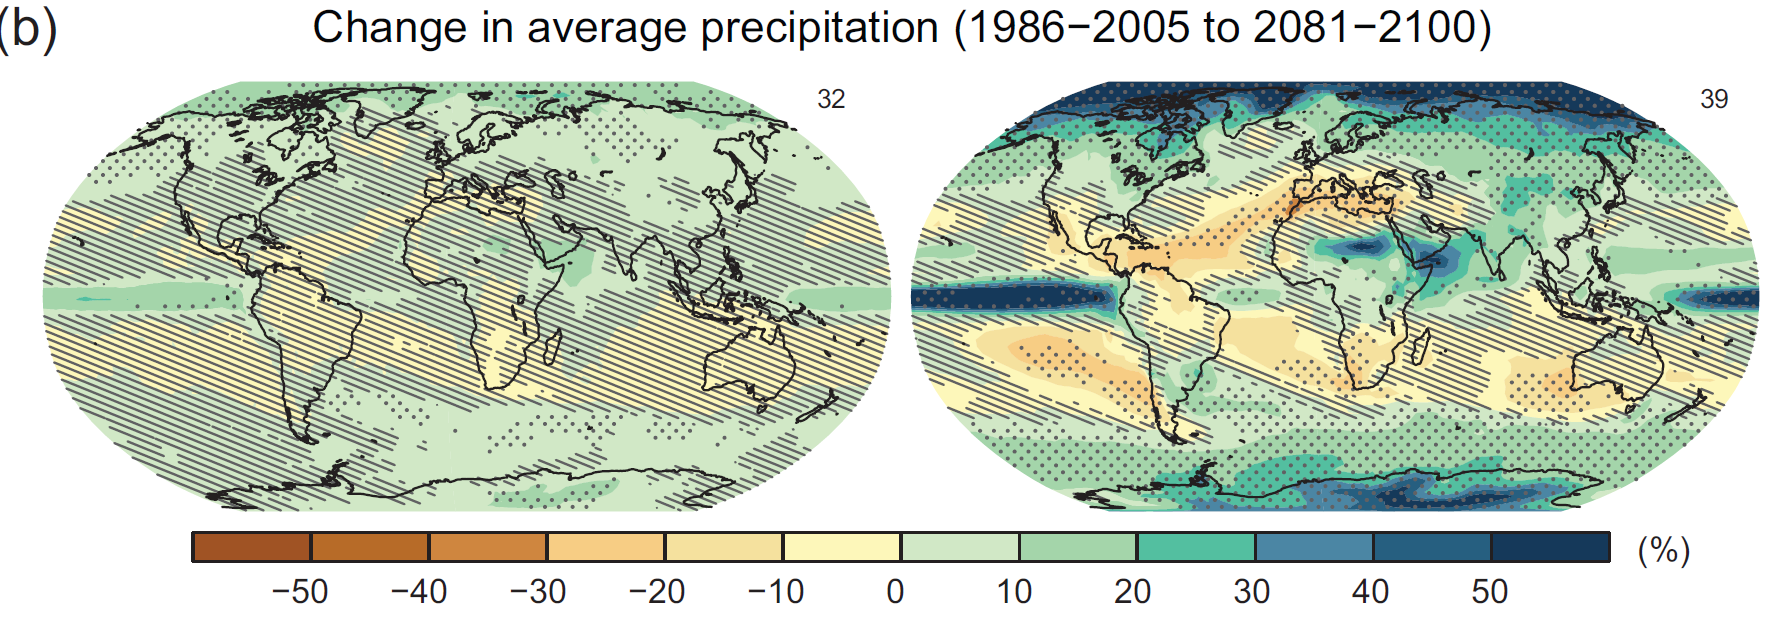 Förändringar i nederbörd i procent 2081-2100 jämfört med 1986-2005 från flera